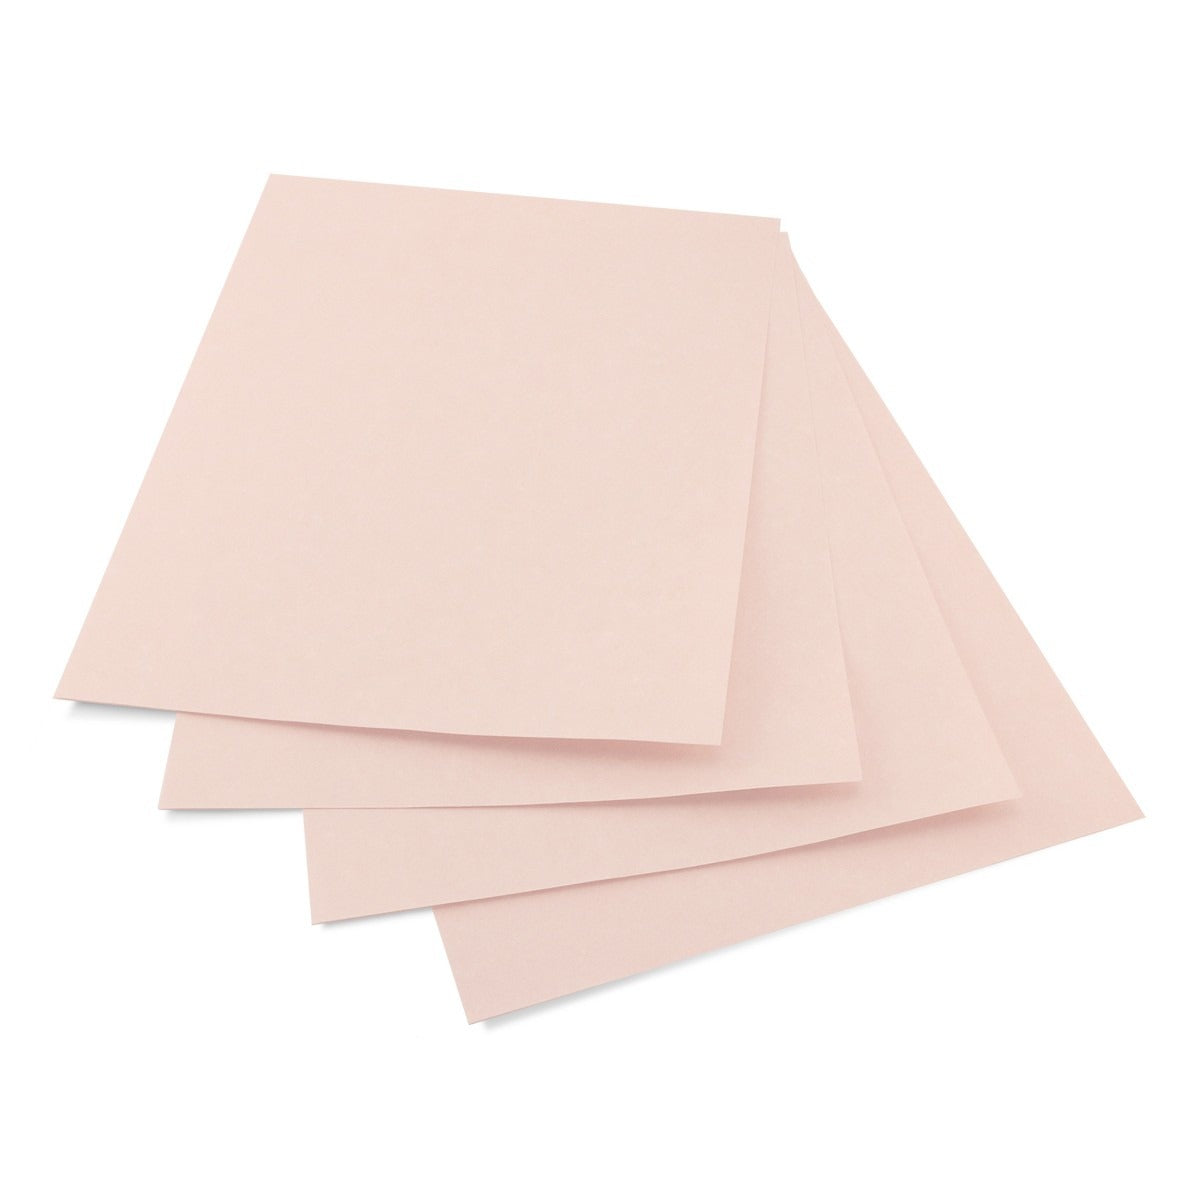 Parchment Paper Pink, 30 Sheets